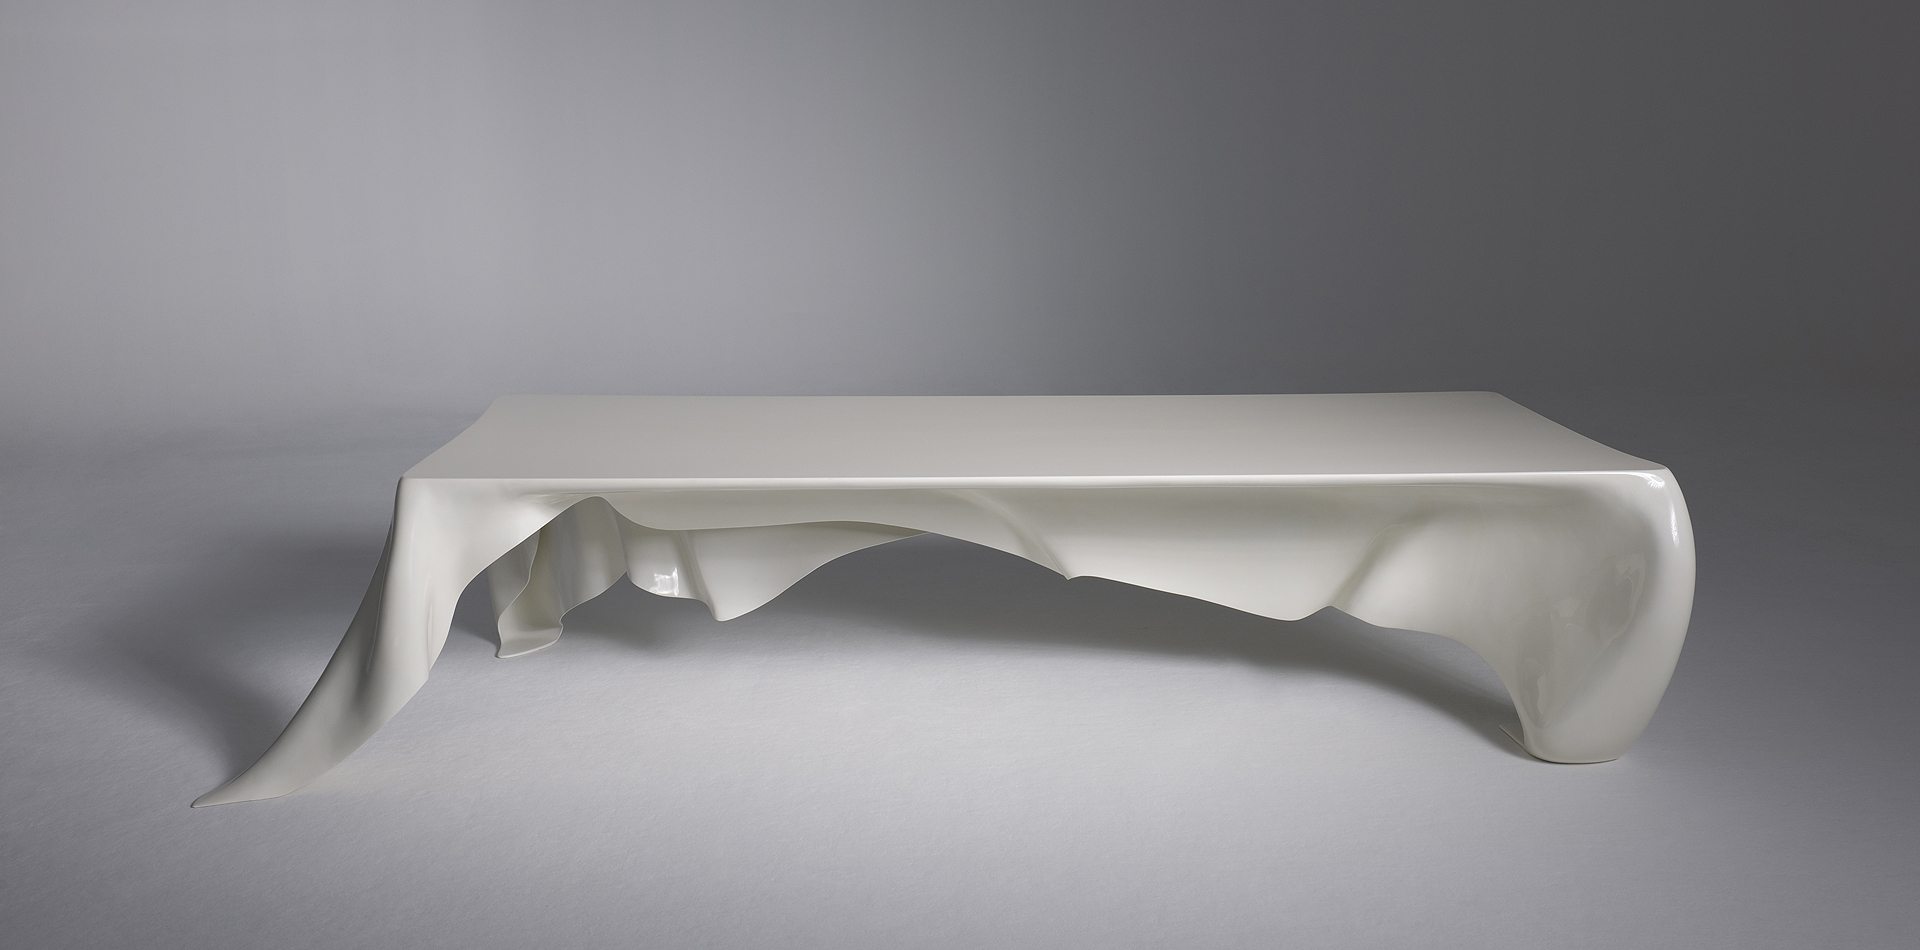 Phantom table from Graft studio